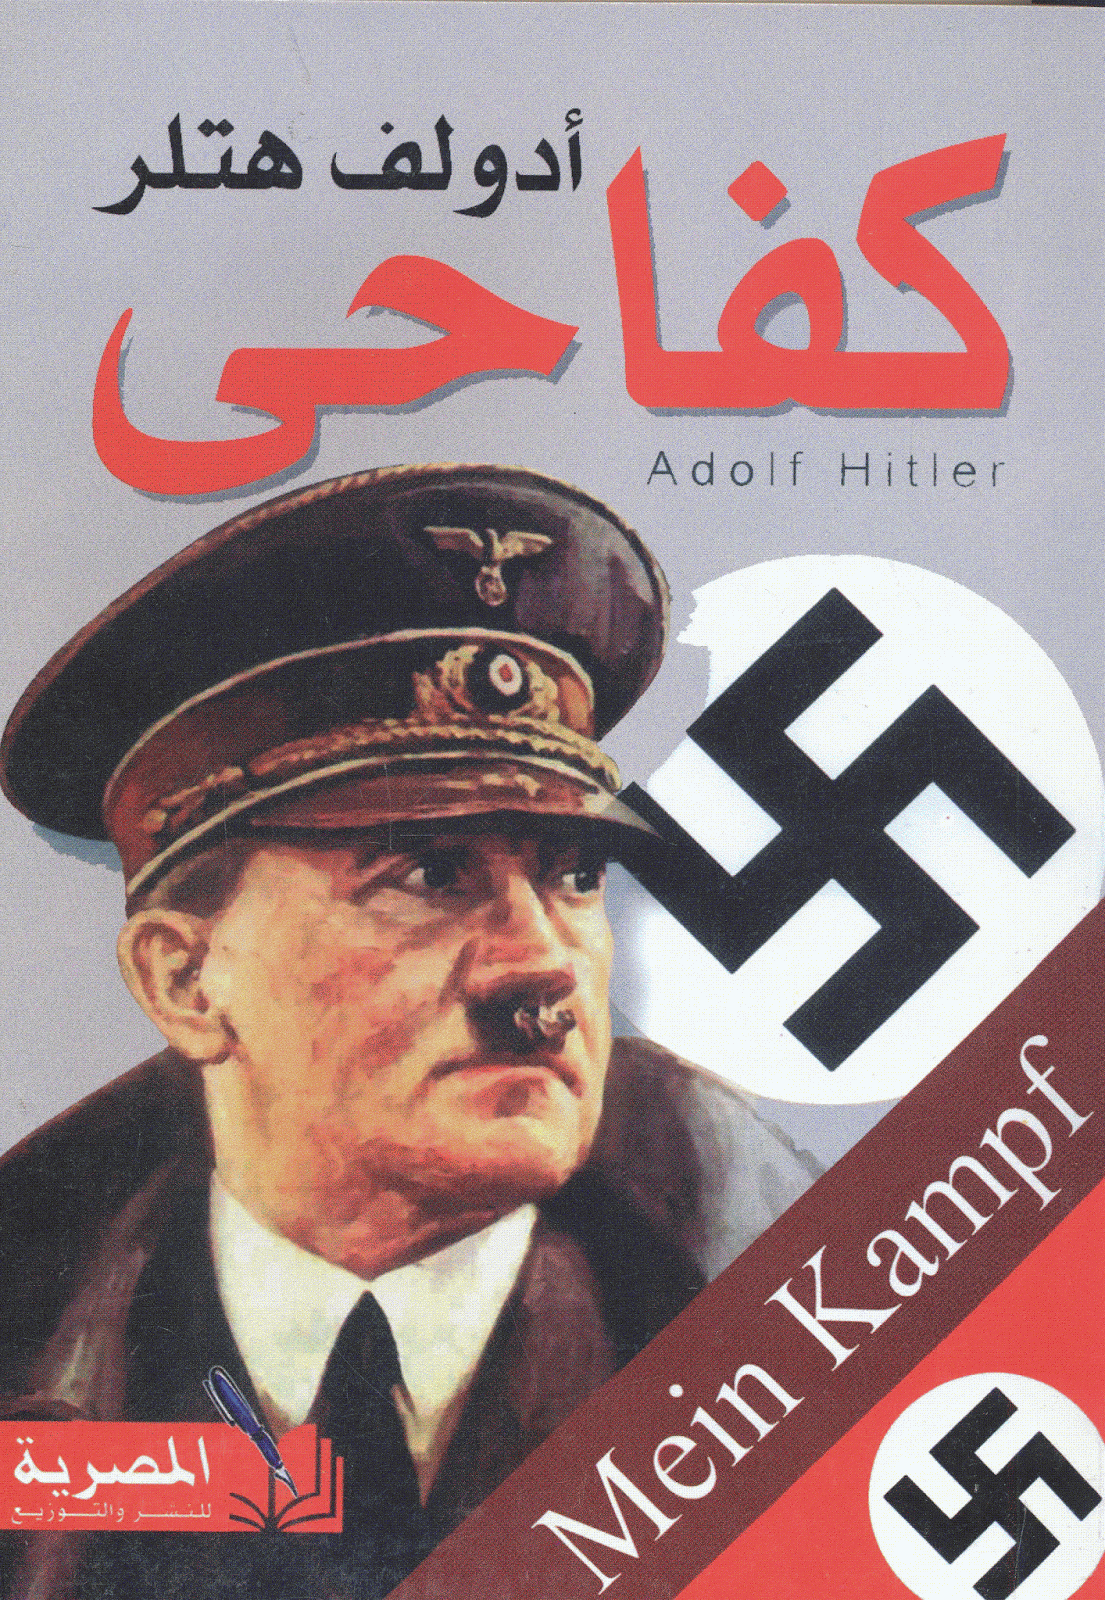  كفاحي - هتلر من الكتب الأكثر تأثيراً في تاريخ البشرية - كتب غيرت أفكار العالم